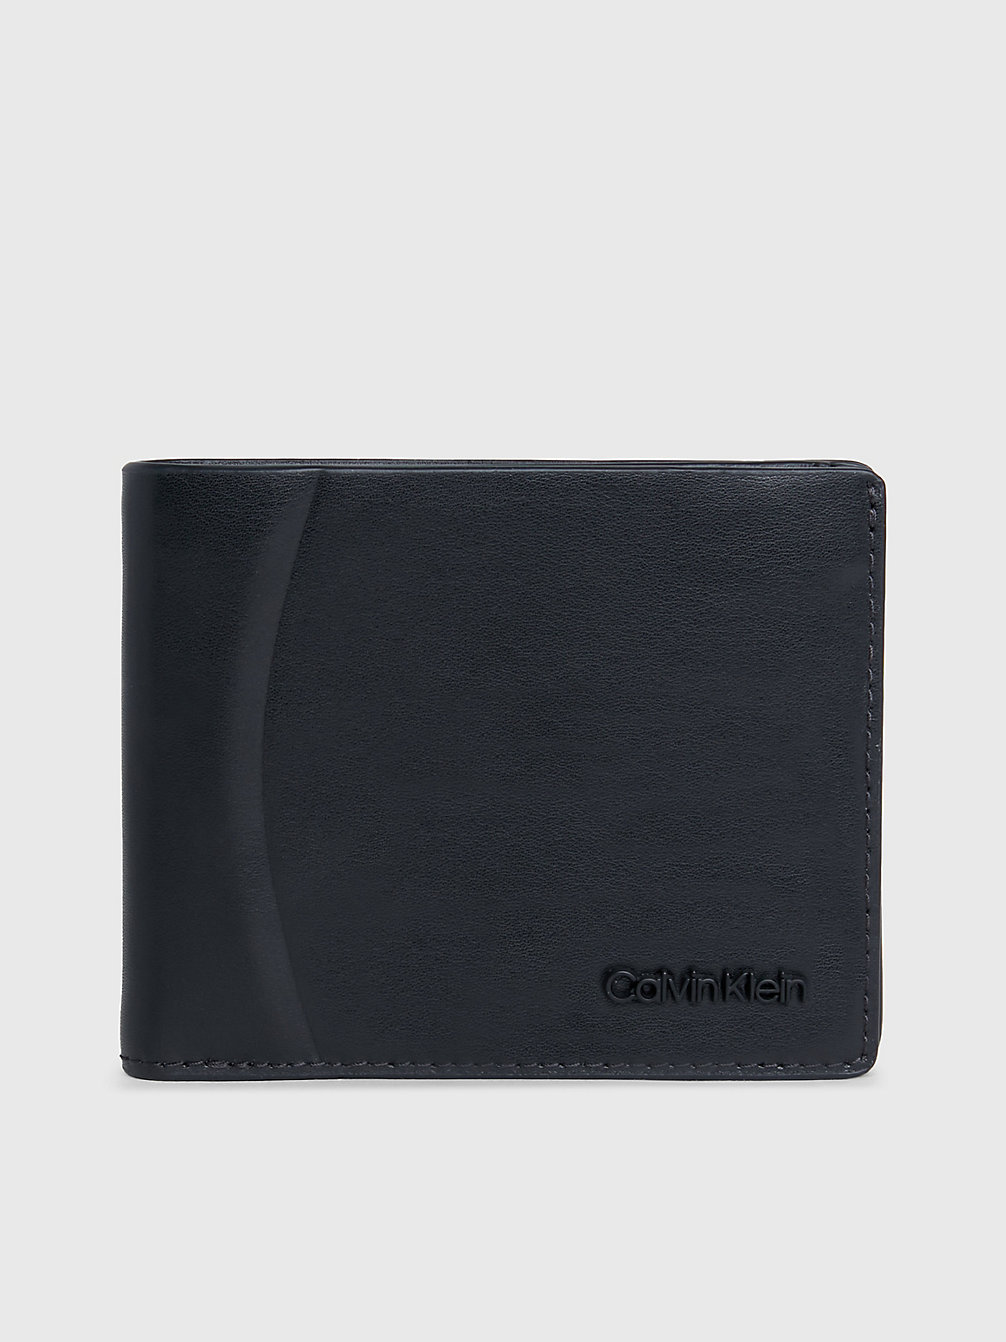 CK BLACK SMOOTH Leather Rfid Billfold Wallet undefined Men Calvin Klein